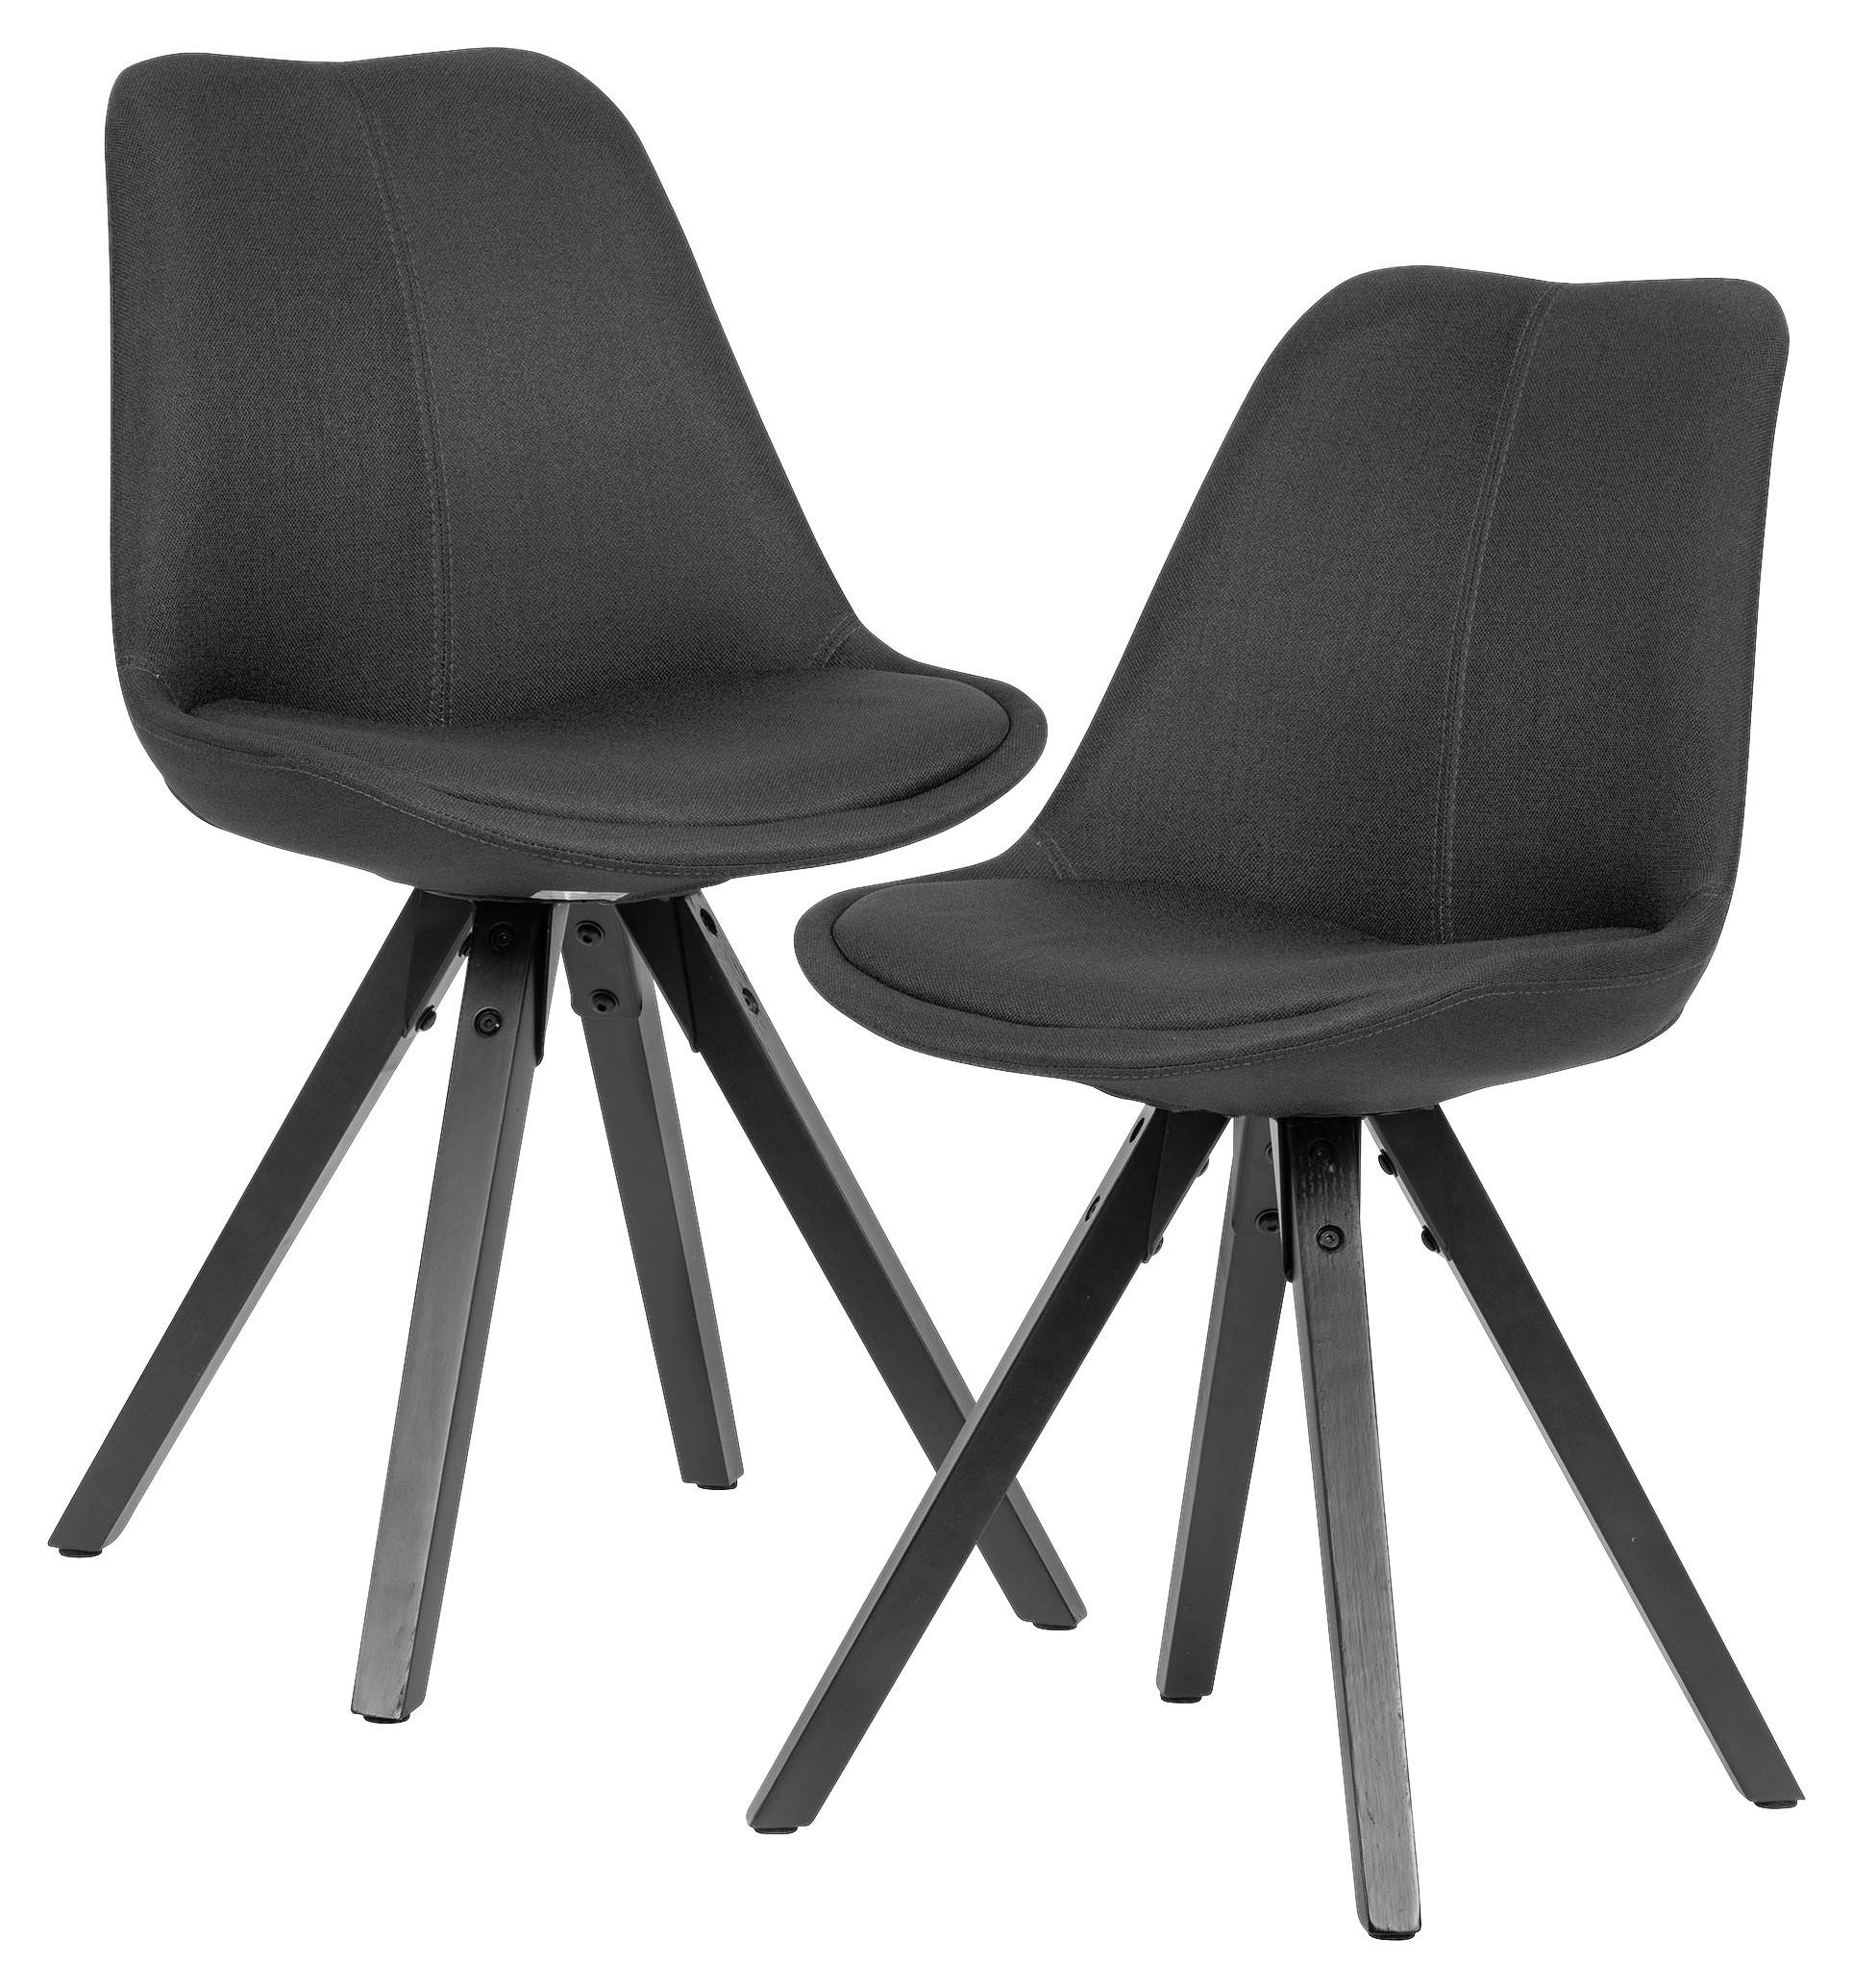 Stuhl-Set 2-teilig in Anthrazit & Schwarz kaufen